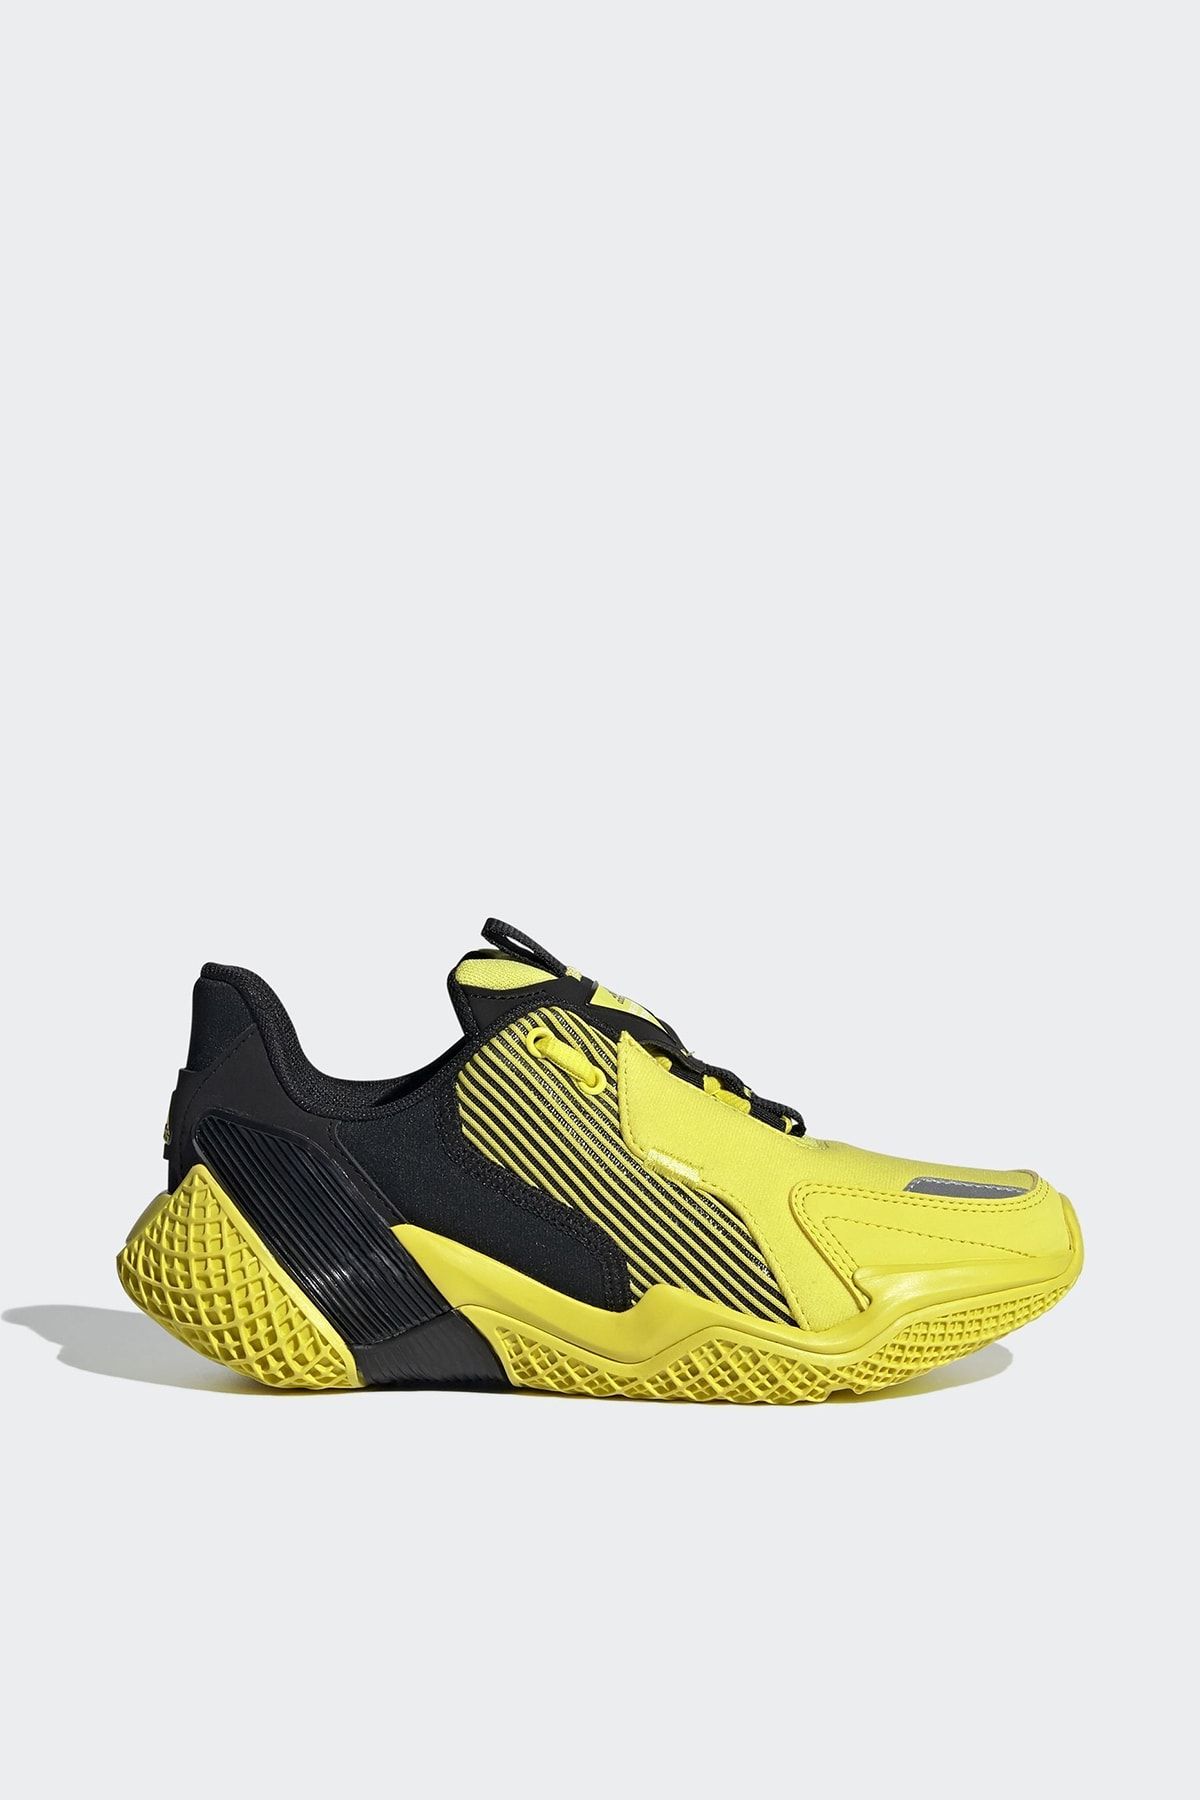 adidas Sarı Genç Koşu Ayakkabısı Eg8335 4uture Rnr J